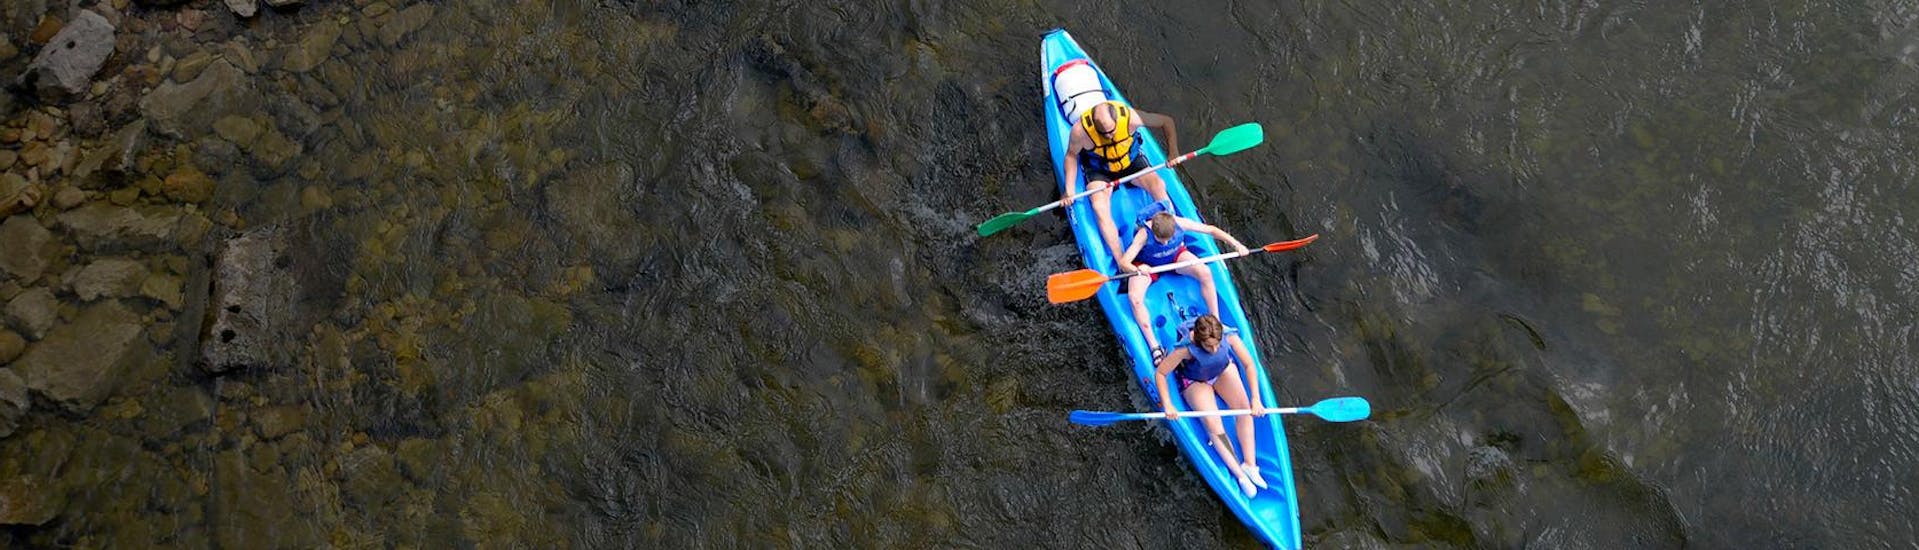 Participantes bajando en canoa el Descenso del Sella en una actividad ofrecida por Rana Sella Arriondas.